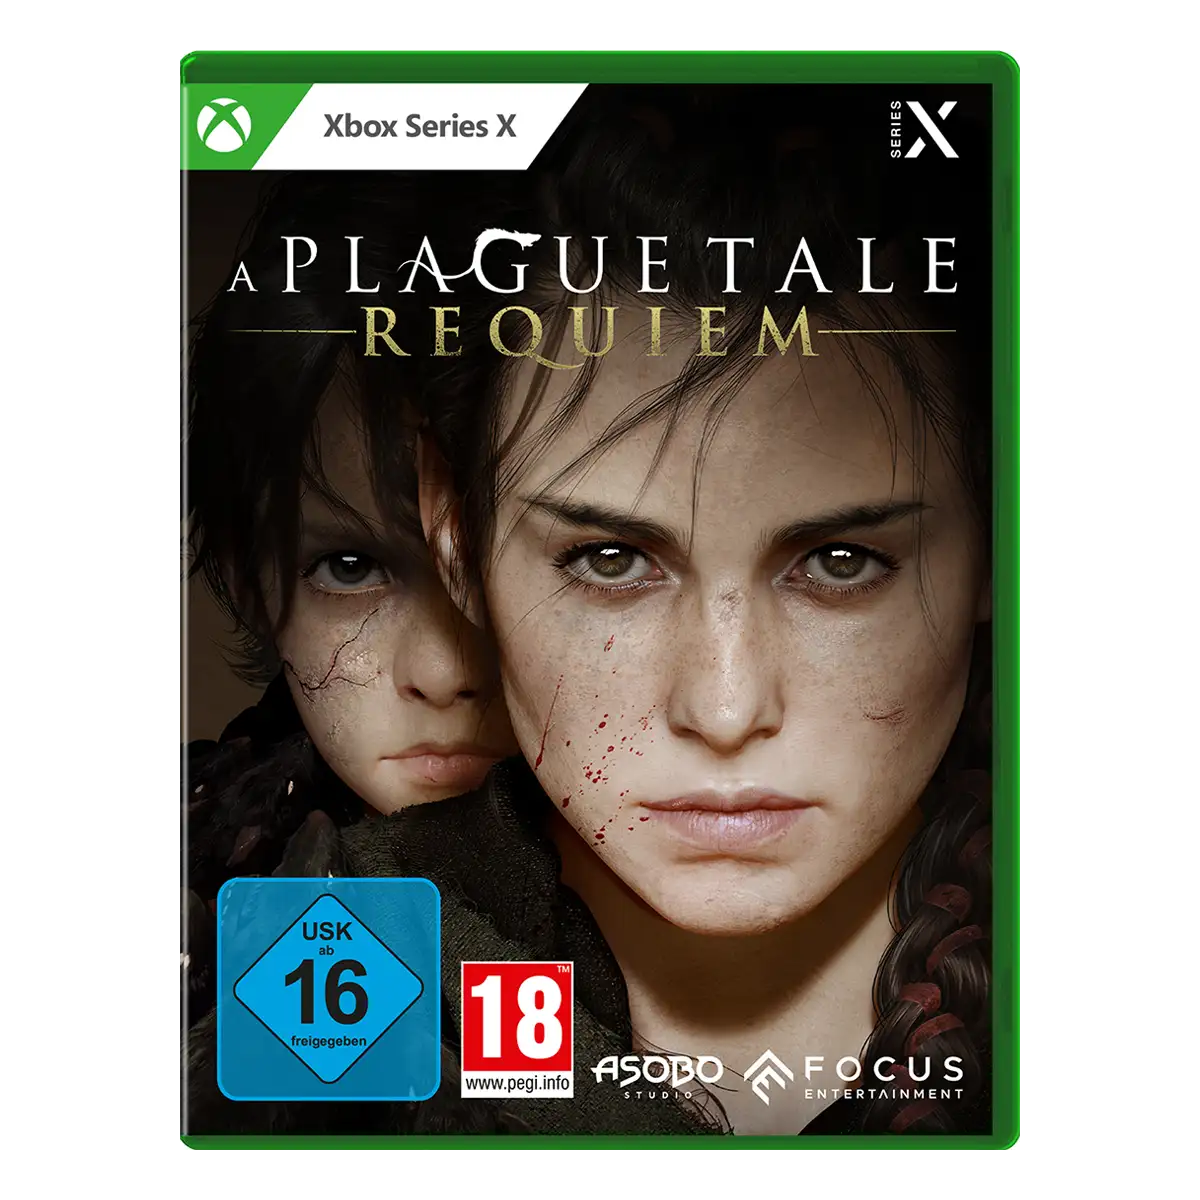 A Plague Tale: Requiem (Xbox Series X) Cover